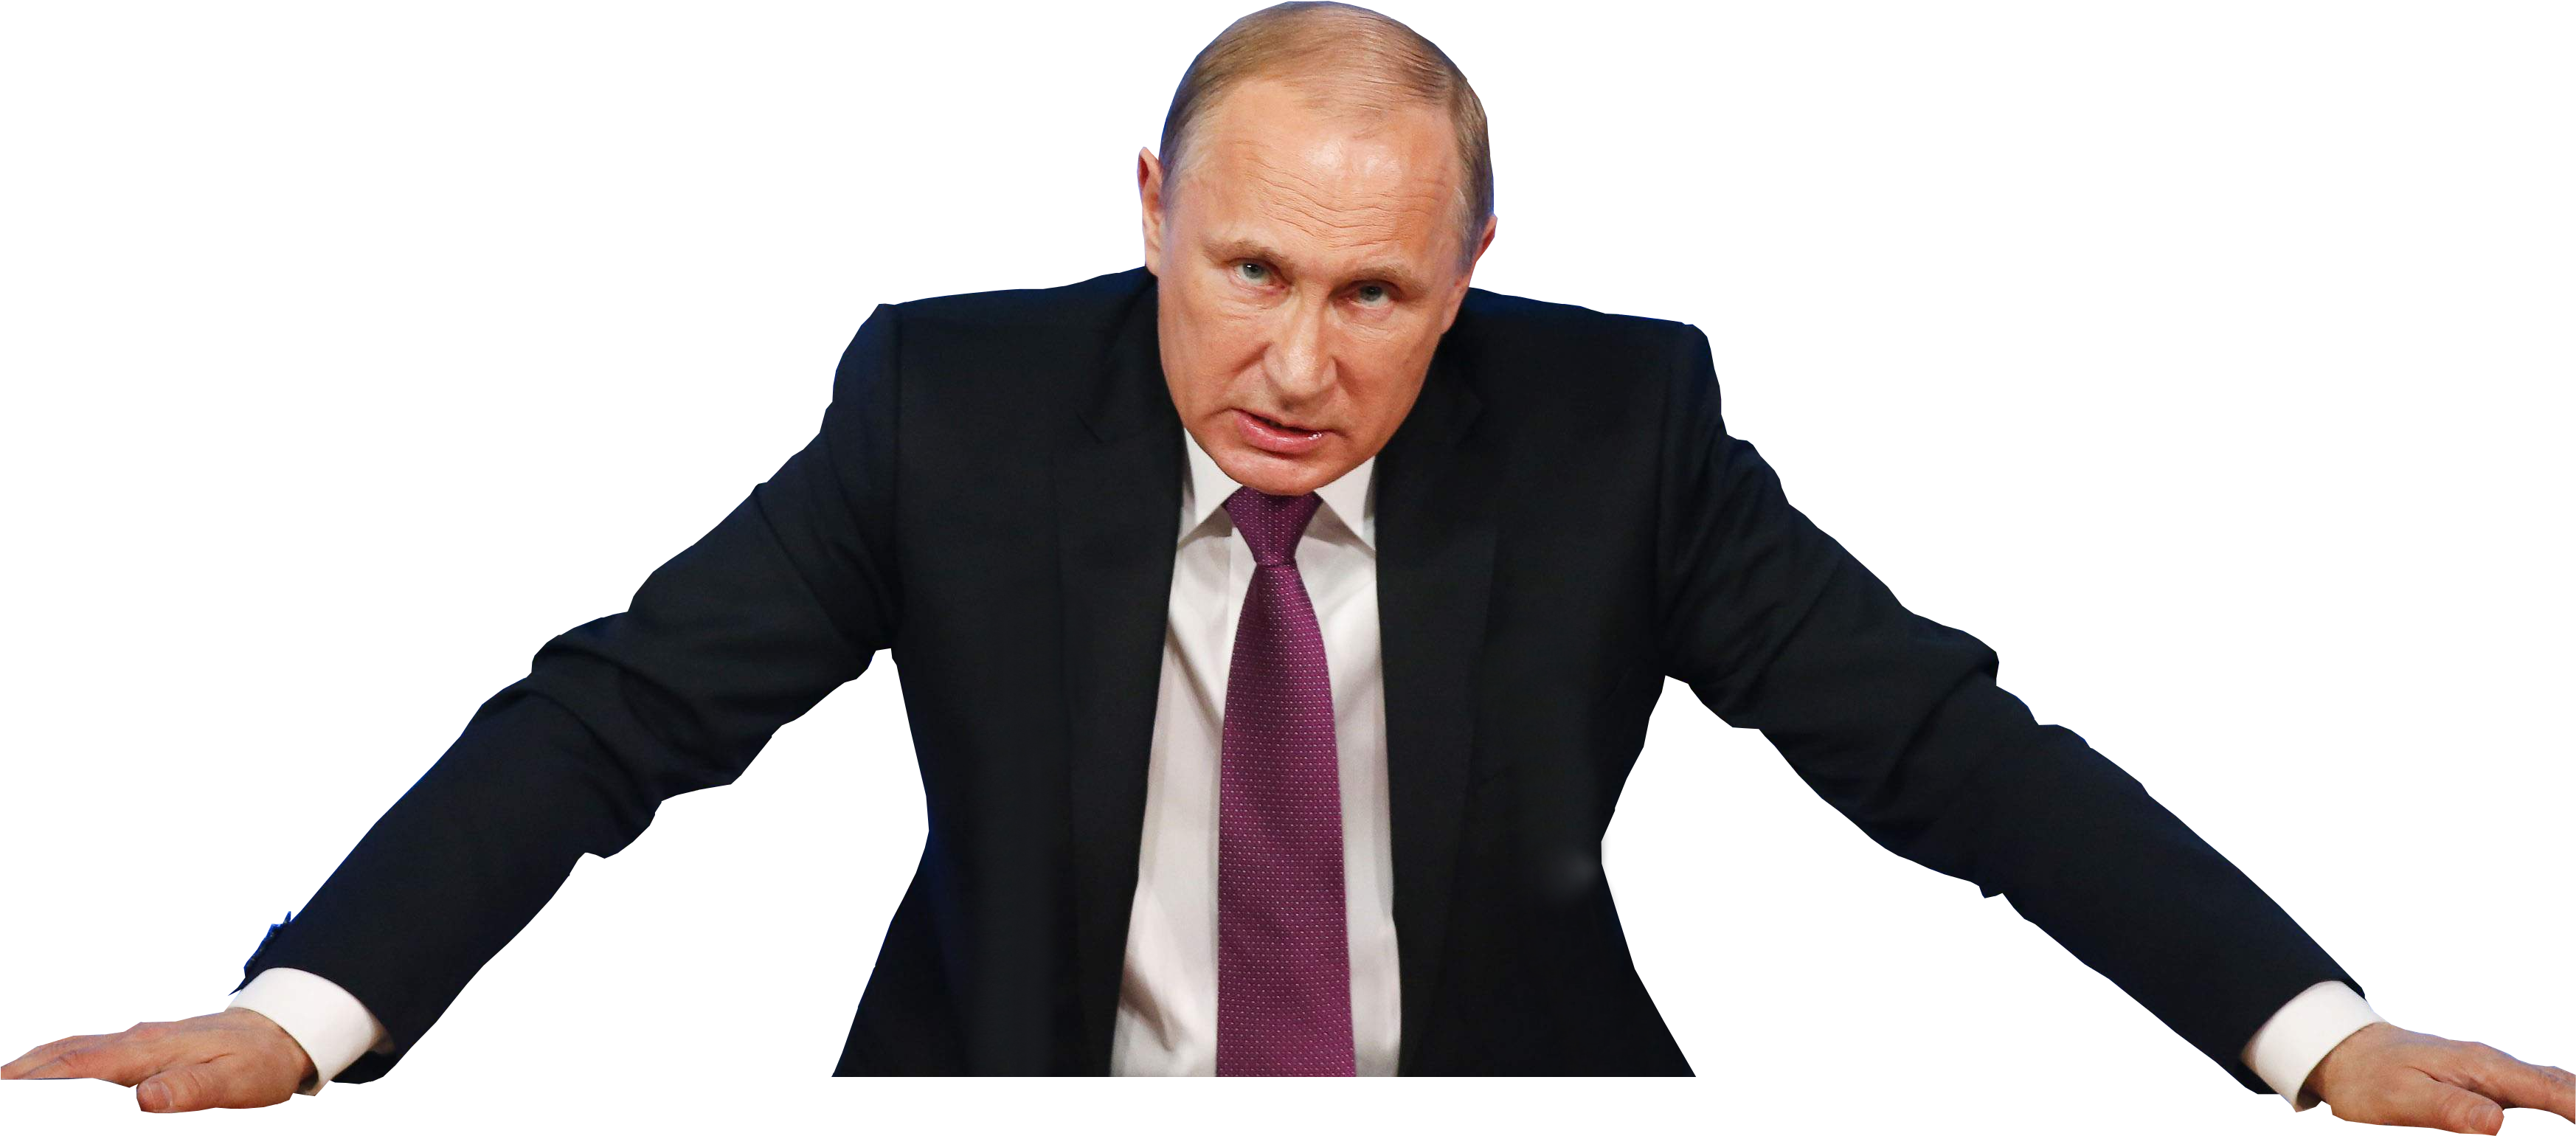 Vladimir Putin Png Image - Vladimir Putin No Background (3500x2199), Png Download